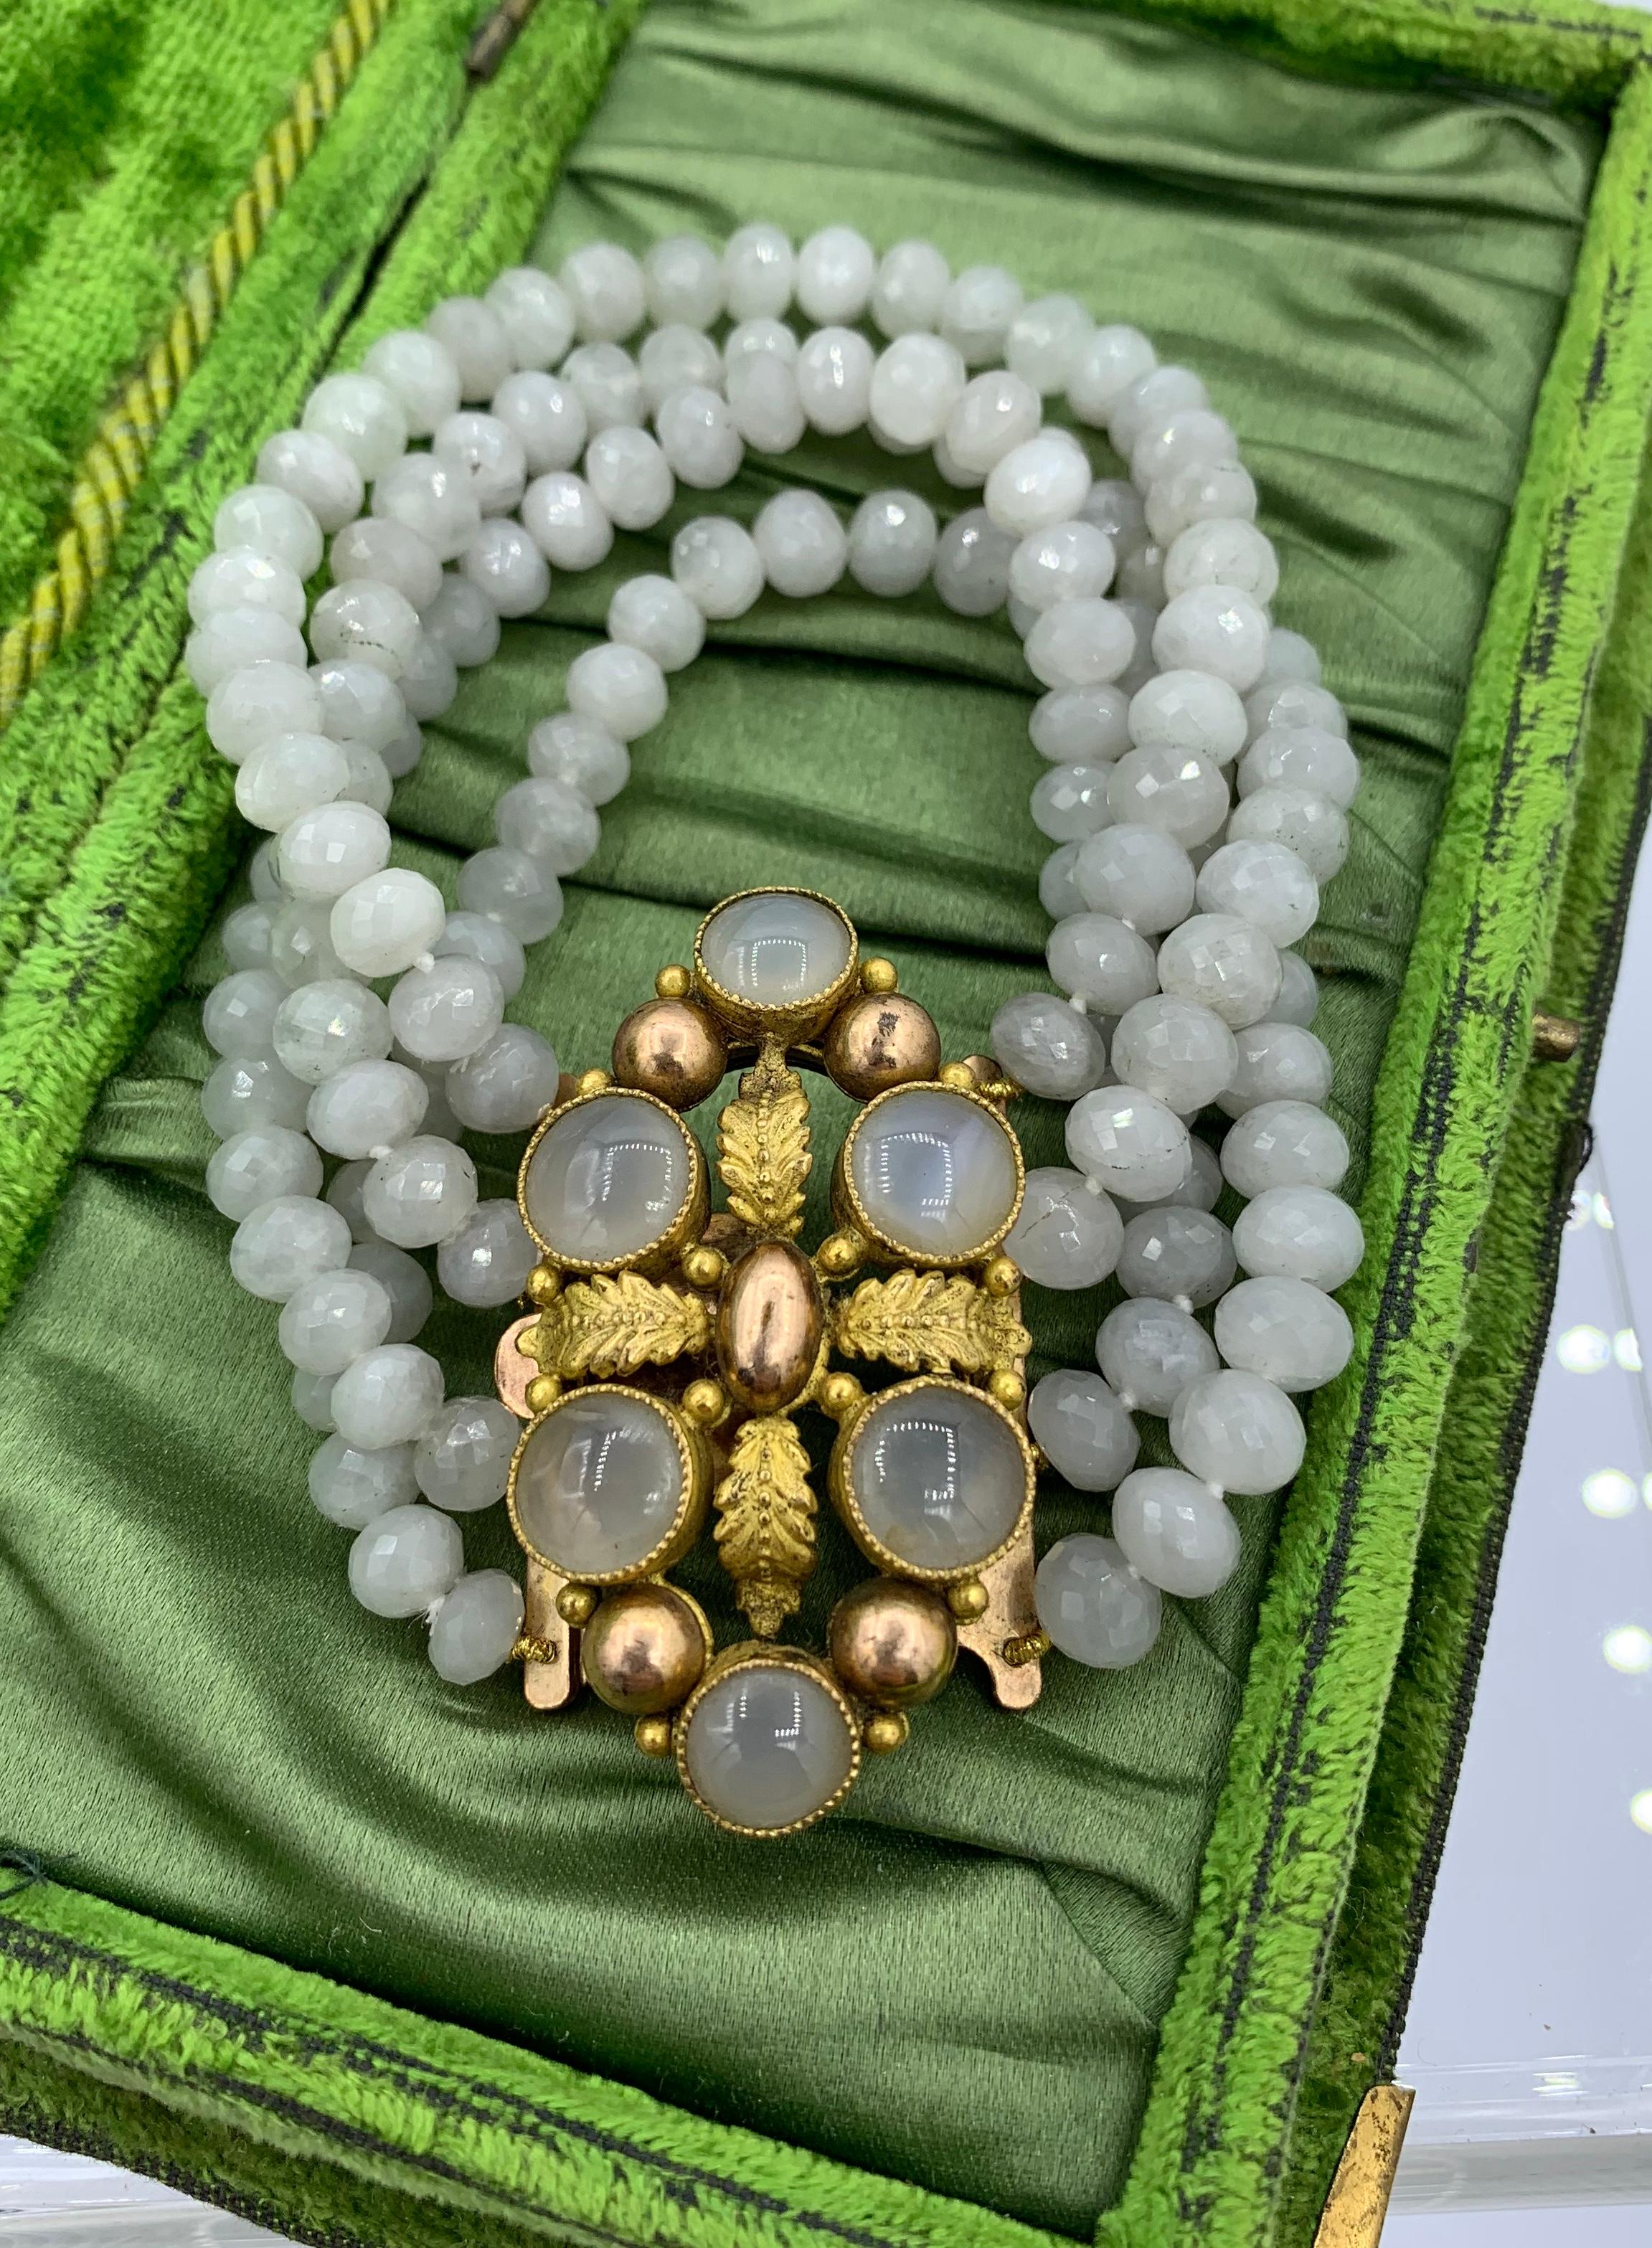 Il s'agit d'un magnifique bracelet français ancien de style géorgien - Napoléon III avec un spectaculaire fermoir central Pinchbeck serti de pierres précieuses d'agate blanche avec une bande de quatre brins de perles d'agate blanche à facettes.  Les